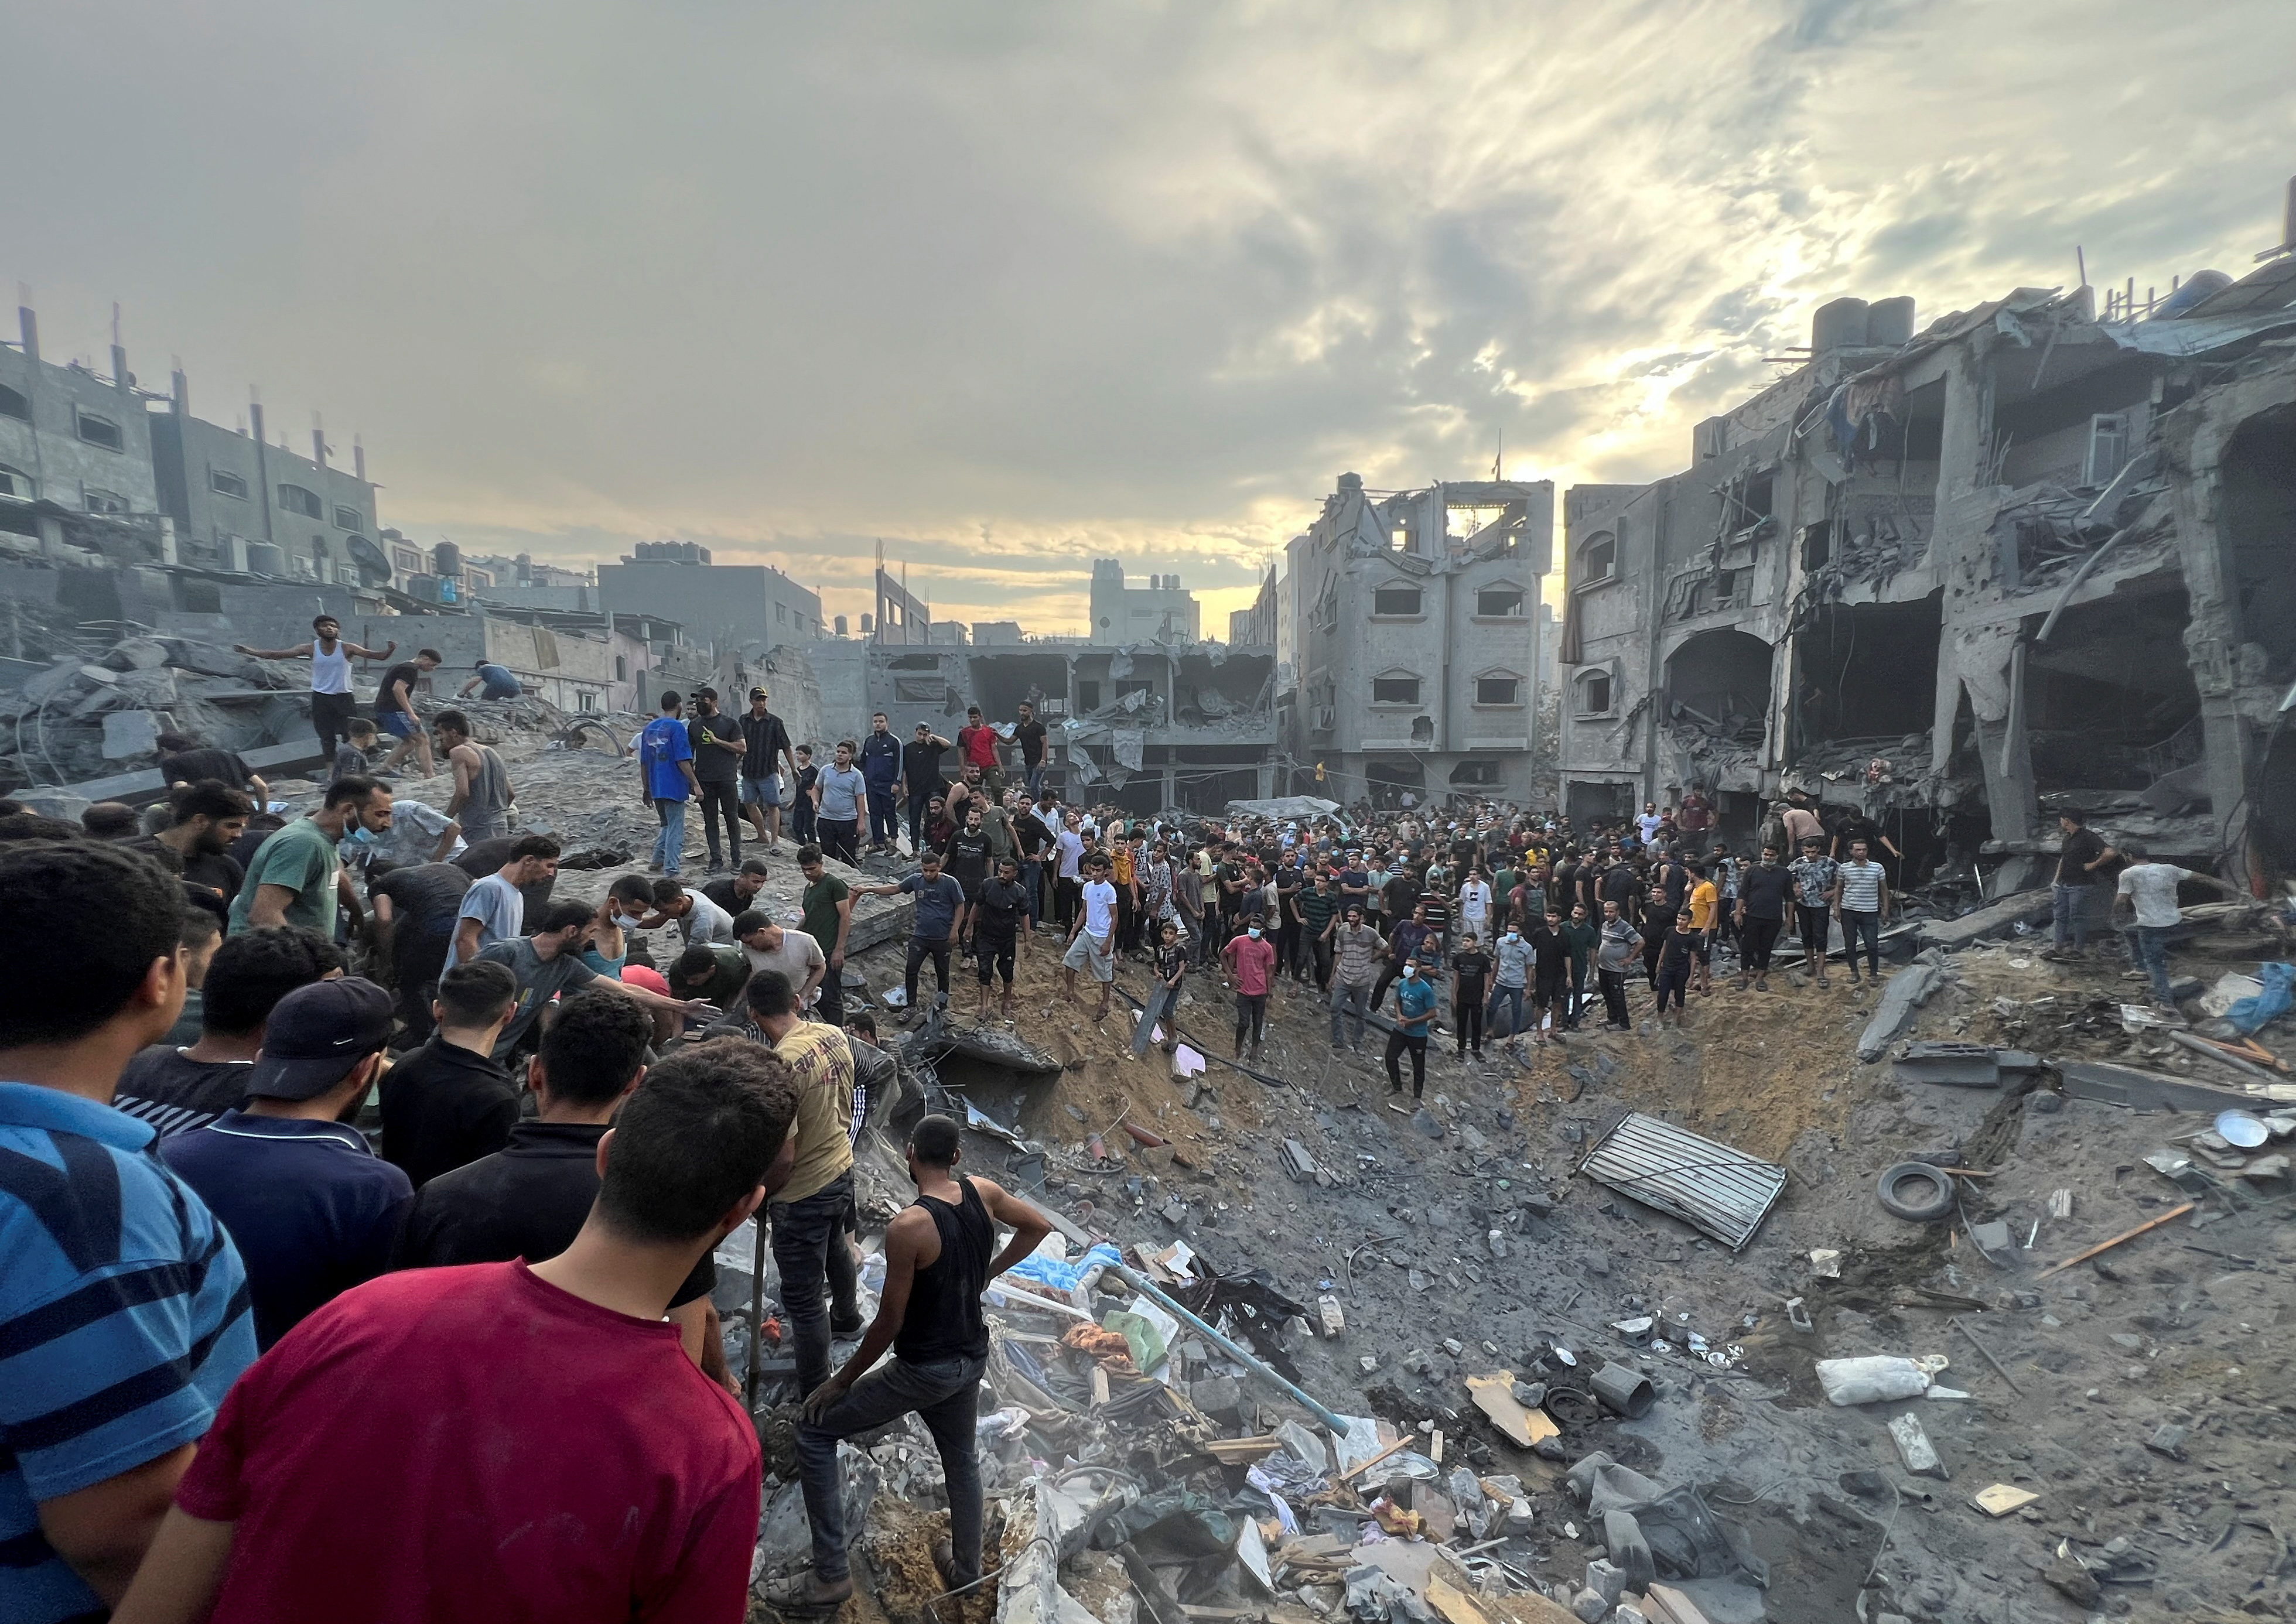 イスラエル、ガザ難民キャンプ空爆で「ハマス指揮官殺害」 50人超死亡か - ロイター (Reuters Japan)